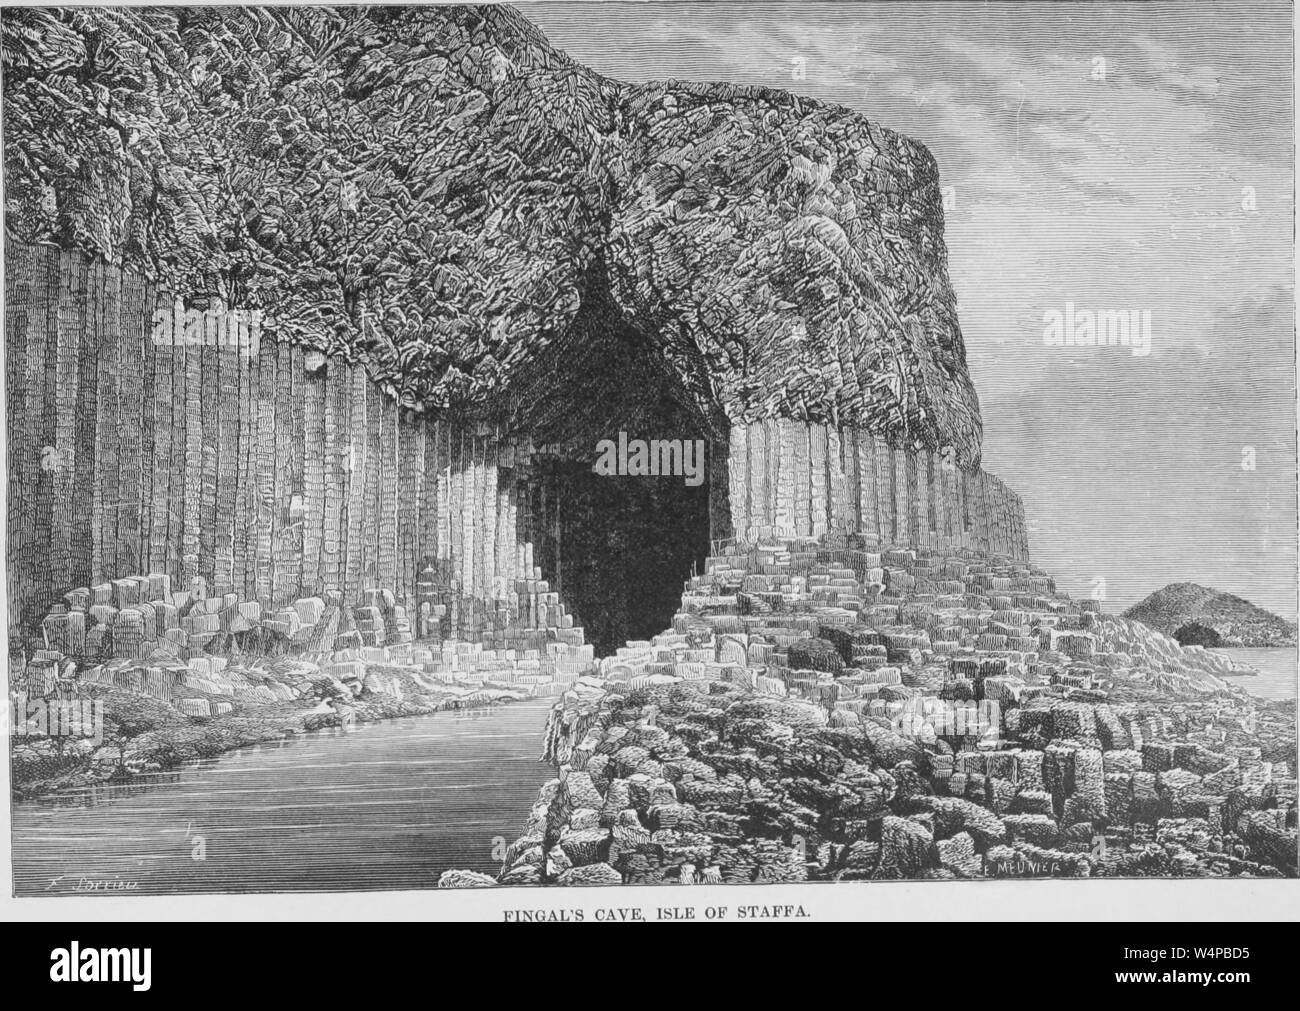 La gravure de la Grotte de Fingal, île de Staffa (Écosse), du livre "La terre et ses habitants" par Elisee Reclus, 1881. Avec la permission de Internet Archive. () Banque D'Images